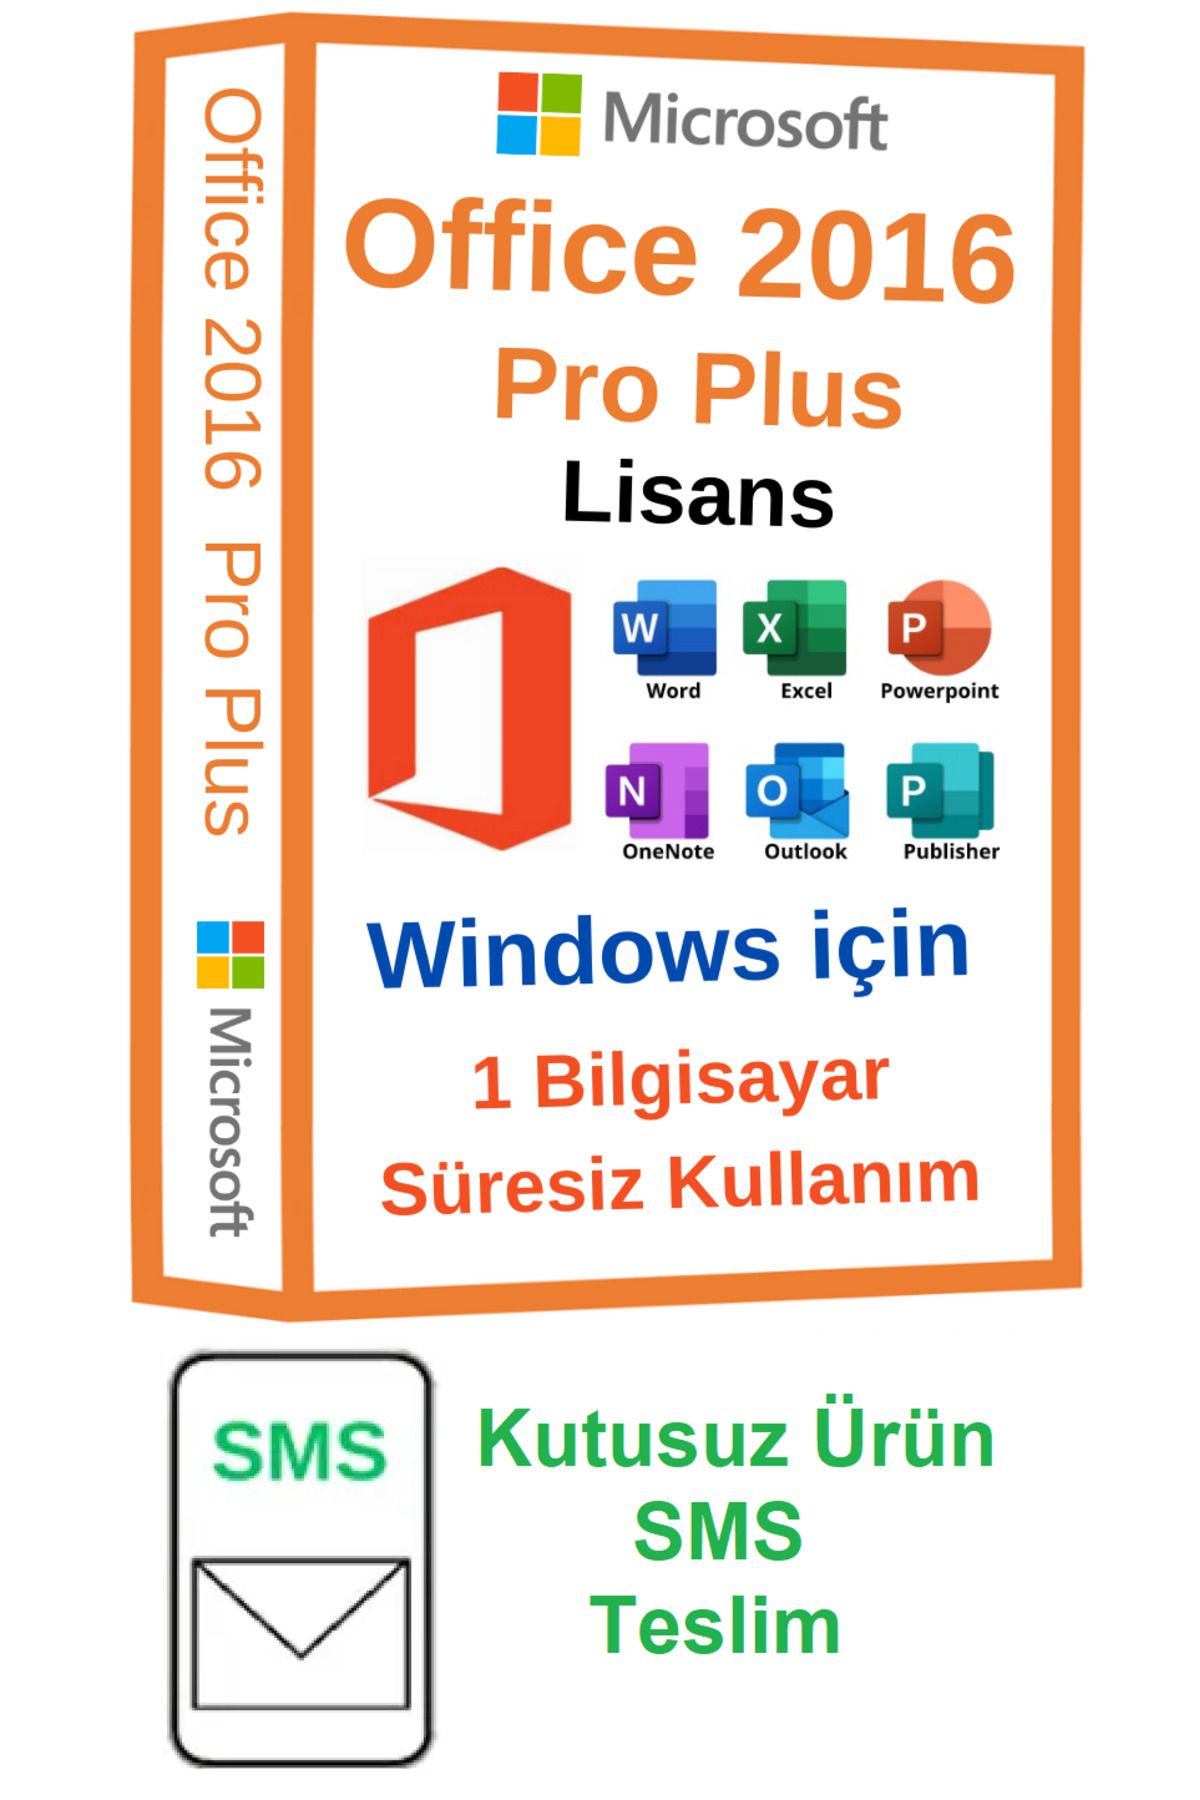 Microsoft Office 2016 Pro Plus Lisans -Süresiz- Windows 10 ve windows 11 Için - Sms Hemen Teslim